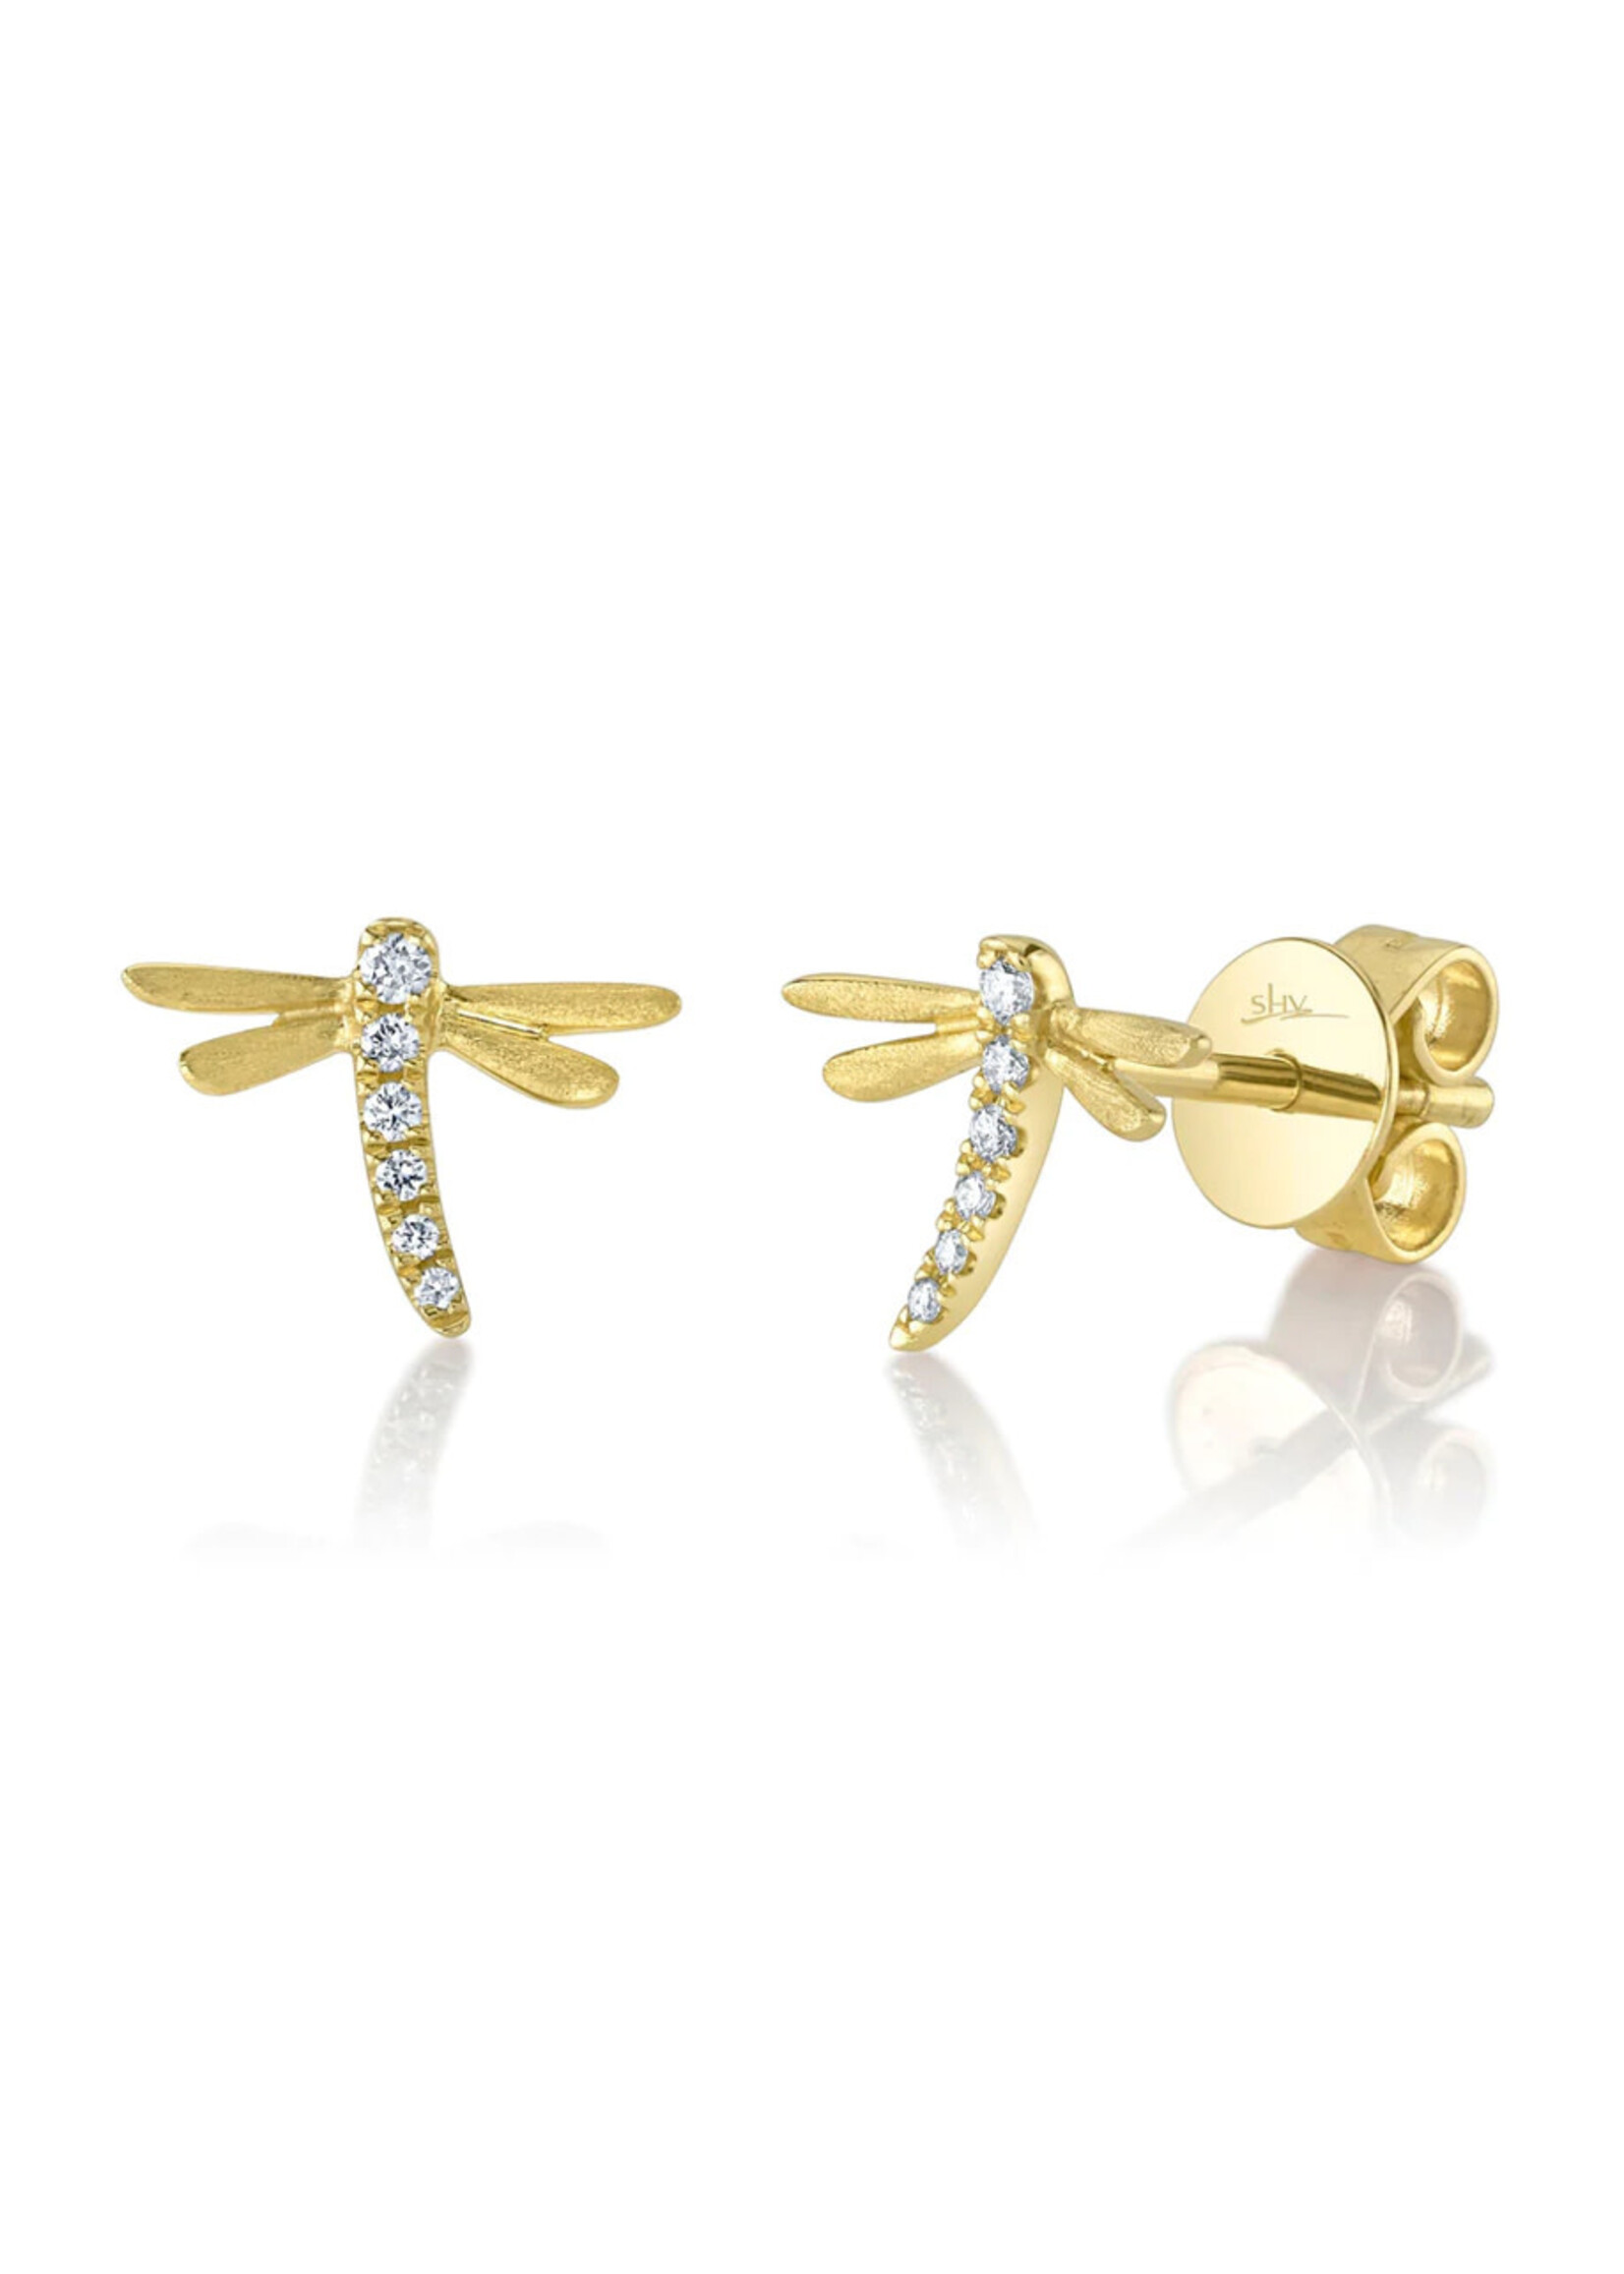 Jill Alberts Diamond Dragonfly Earrings